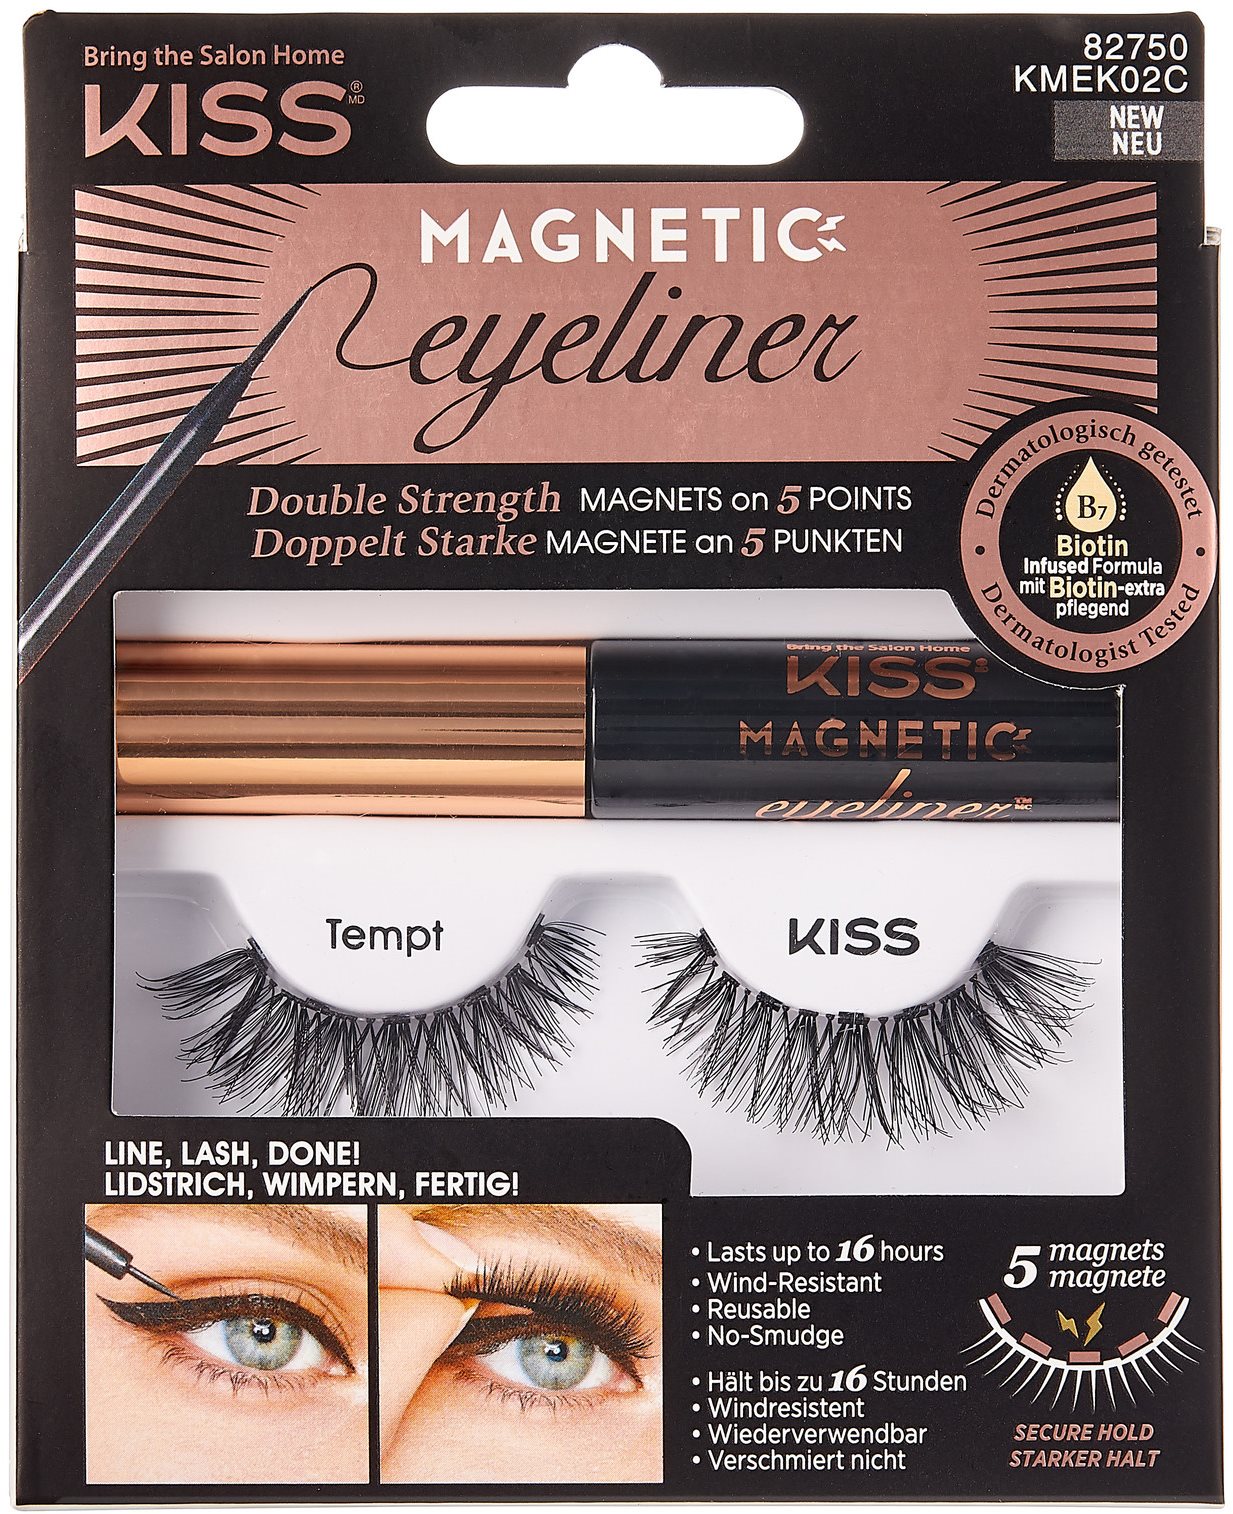 KISS Magnetic Eyeliner Kit - 02